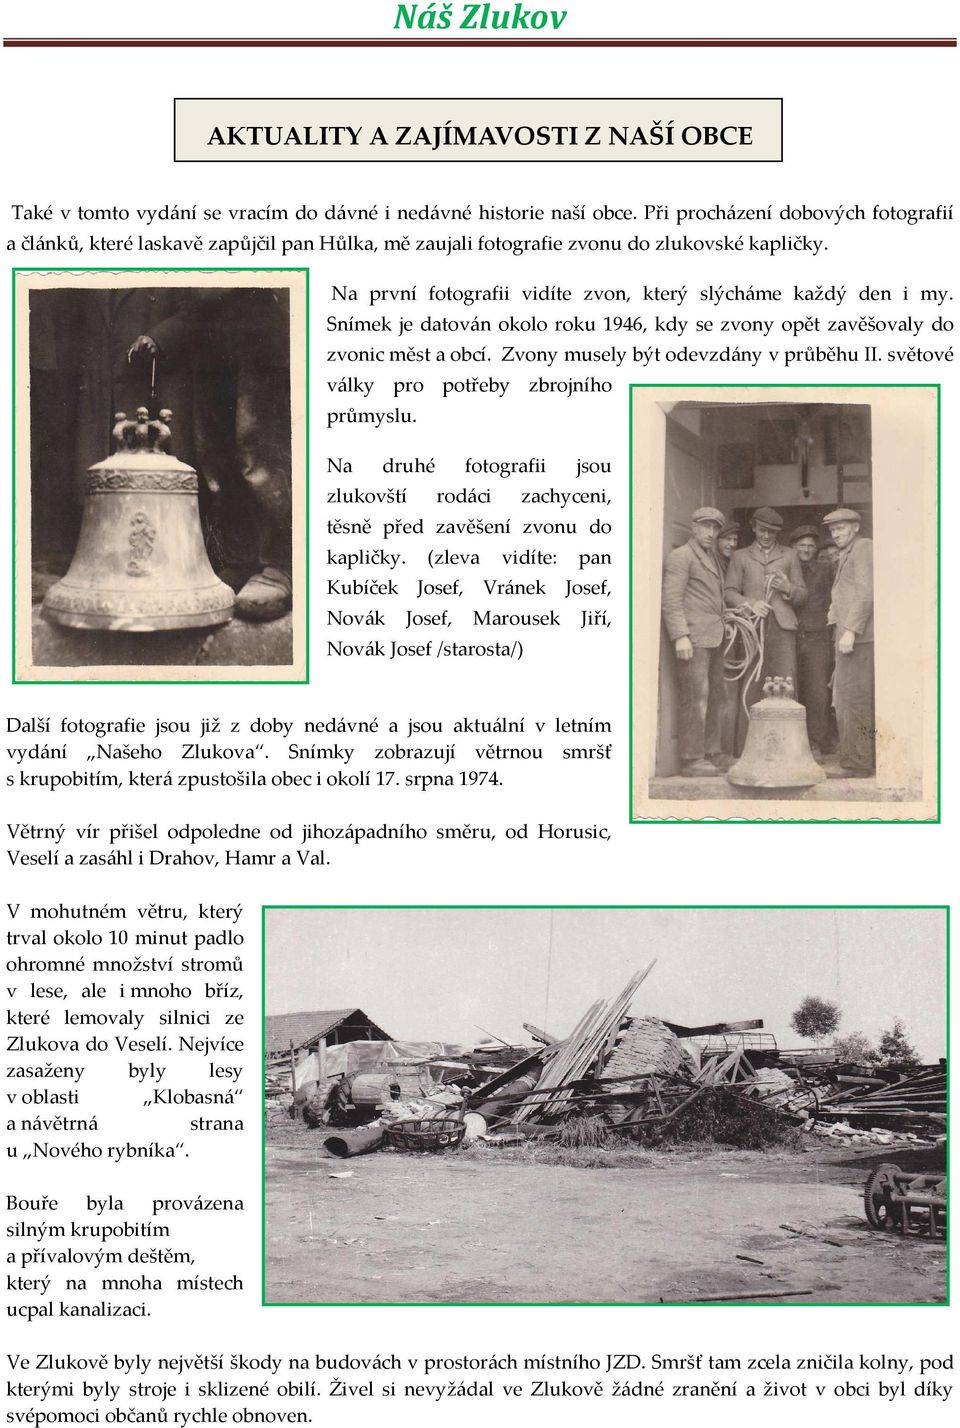 Snímek je datován okolo roku 1946, kdy se zvony opět zavěšovaly do zvonic měst a obcí. Zvony musely být odevzdány v průběhu II. světové války pro potřeby zbrojního průmyslu.